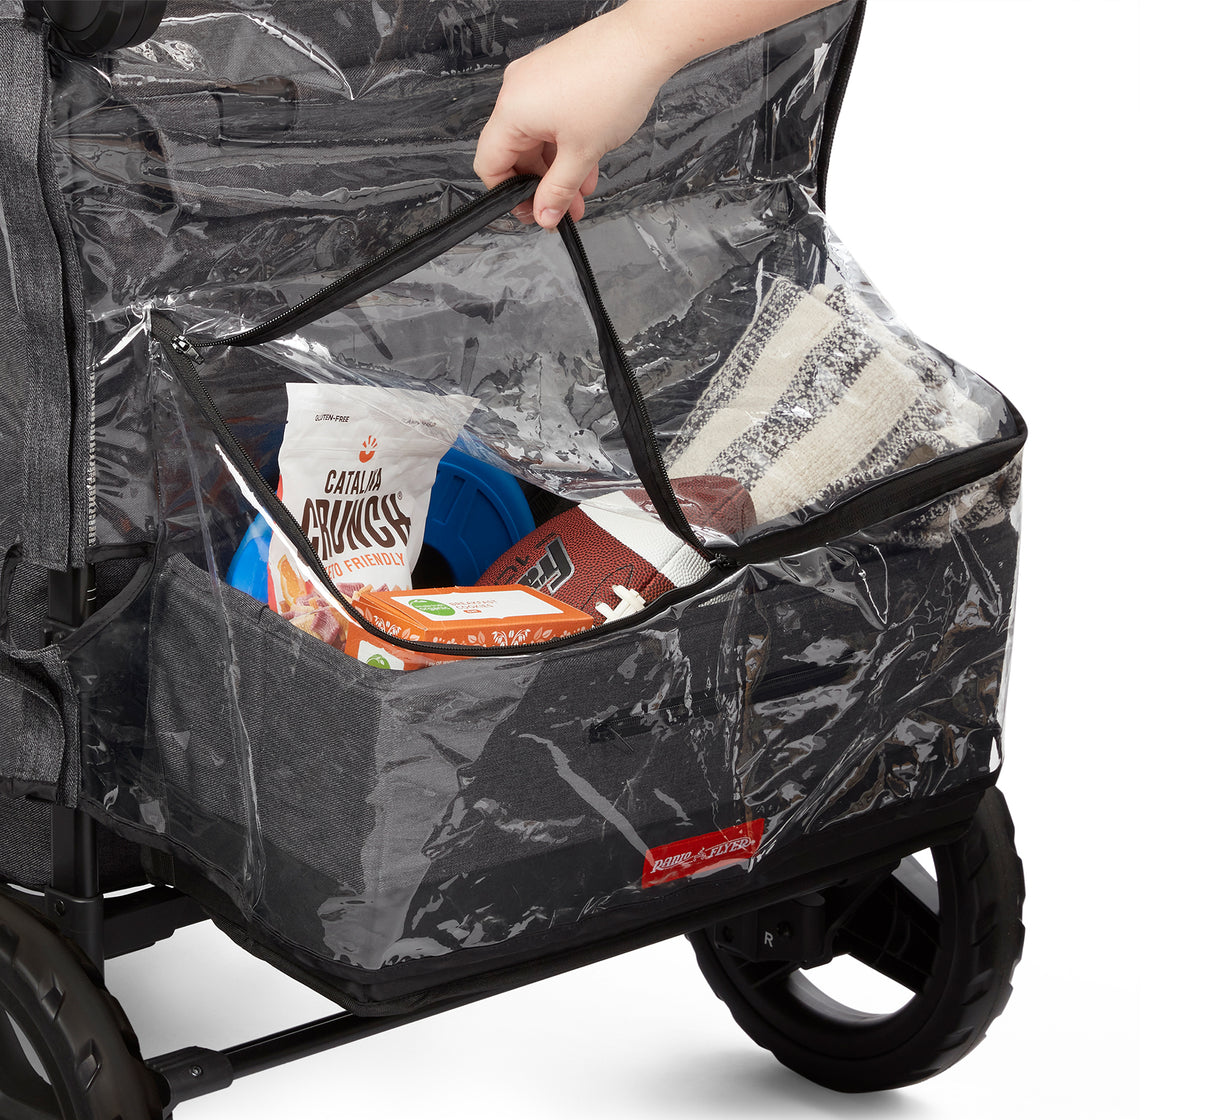 Rain Cover with Bag - Voya™ Quad Stroller Wagon